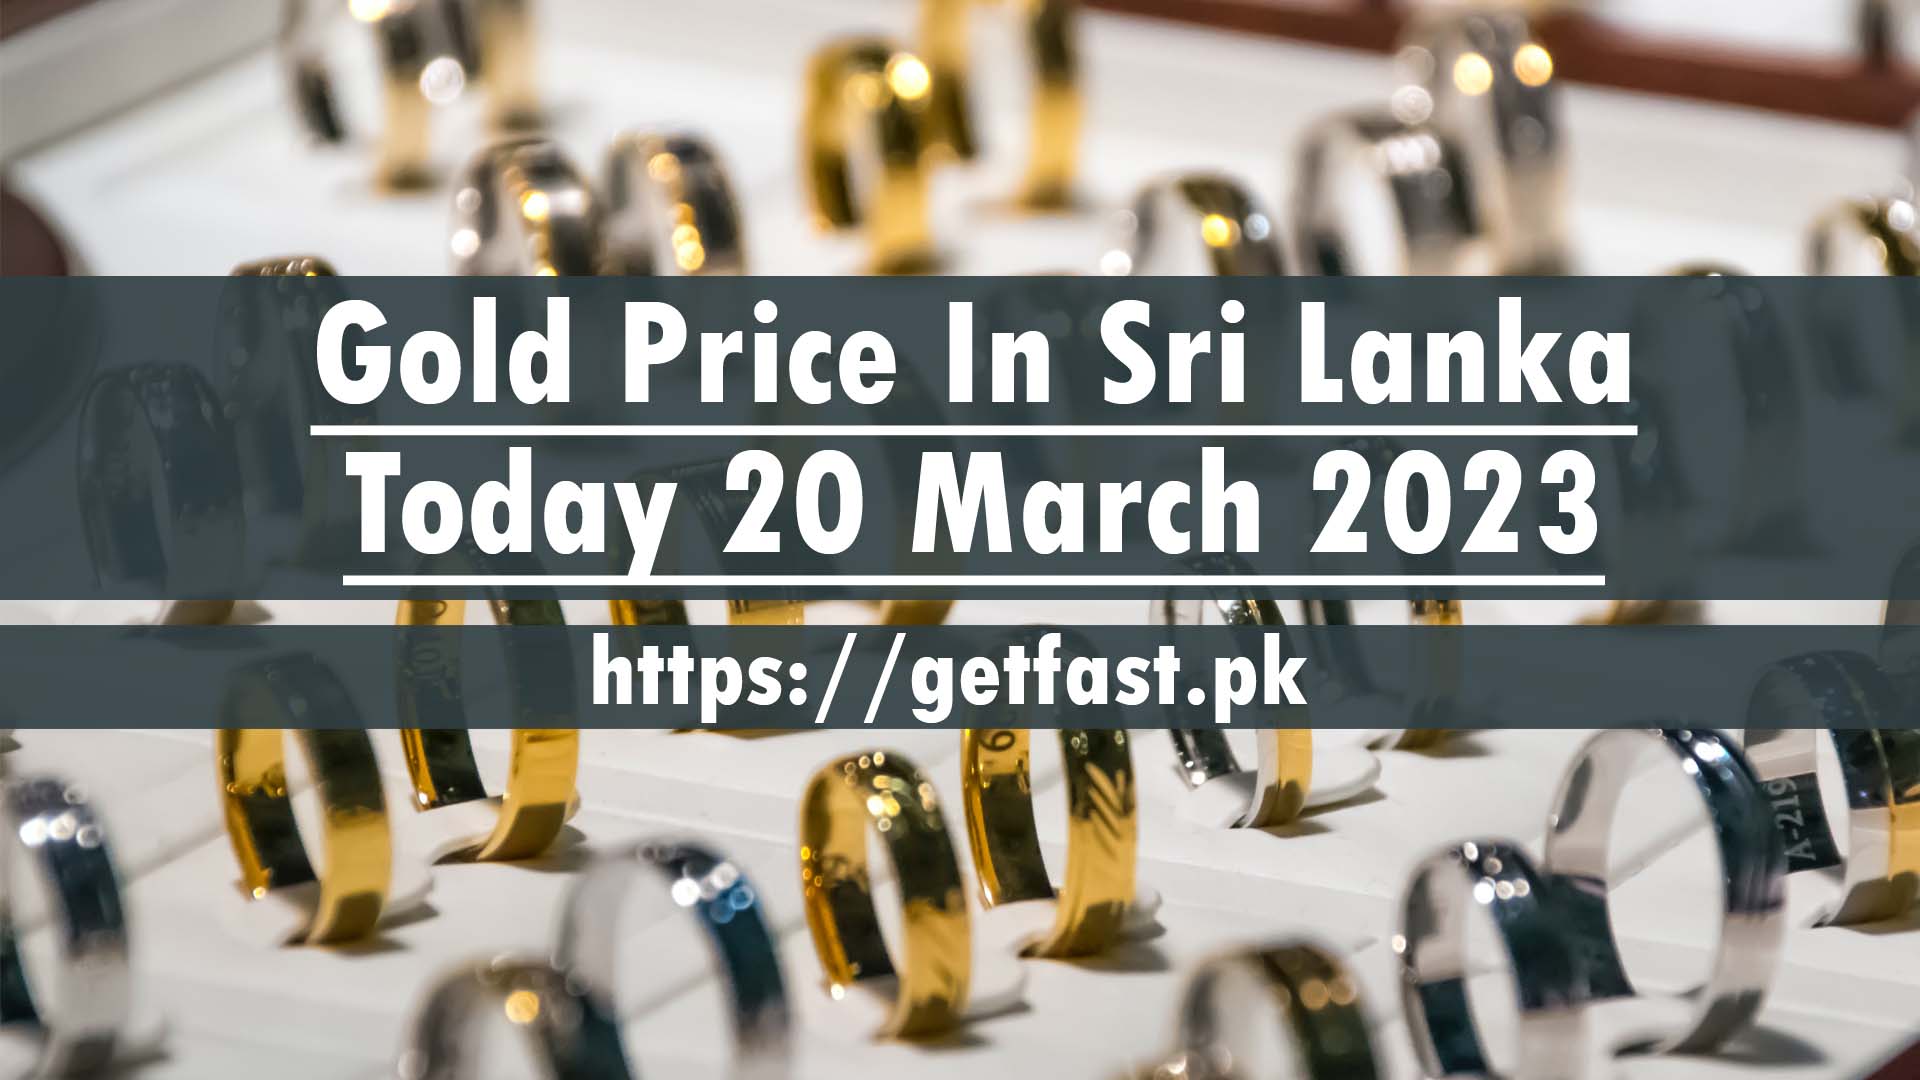 Gold Price In Sri Lanka Today 20 March 2023